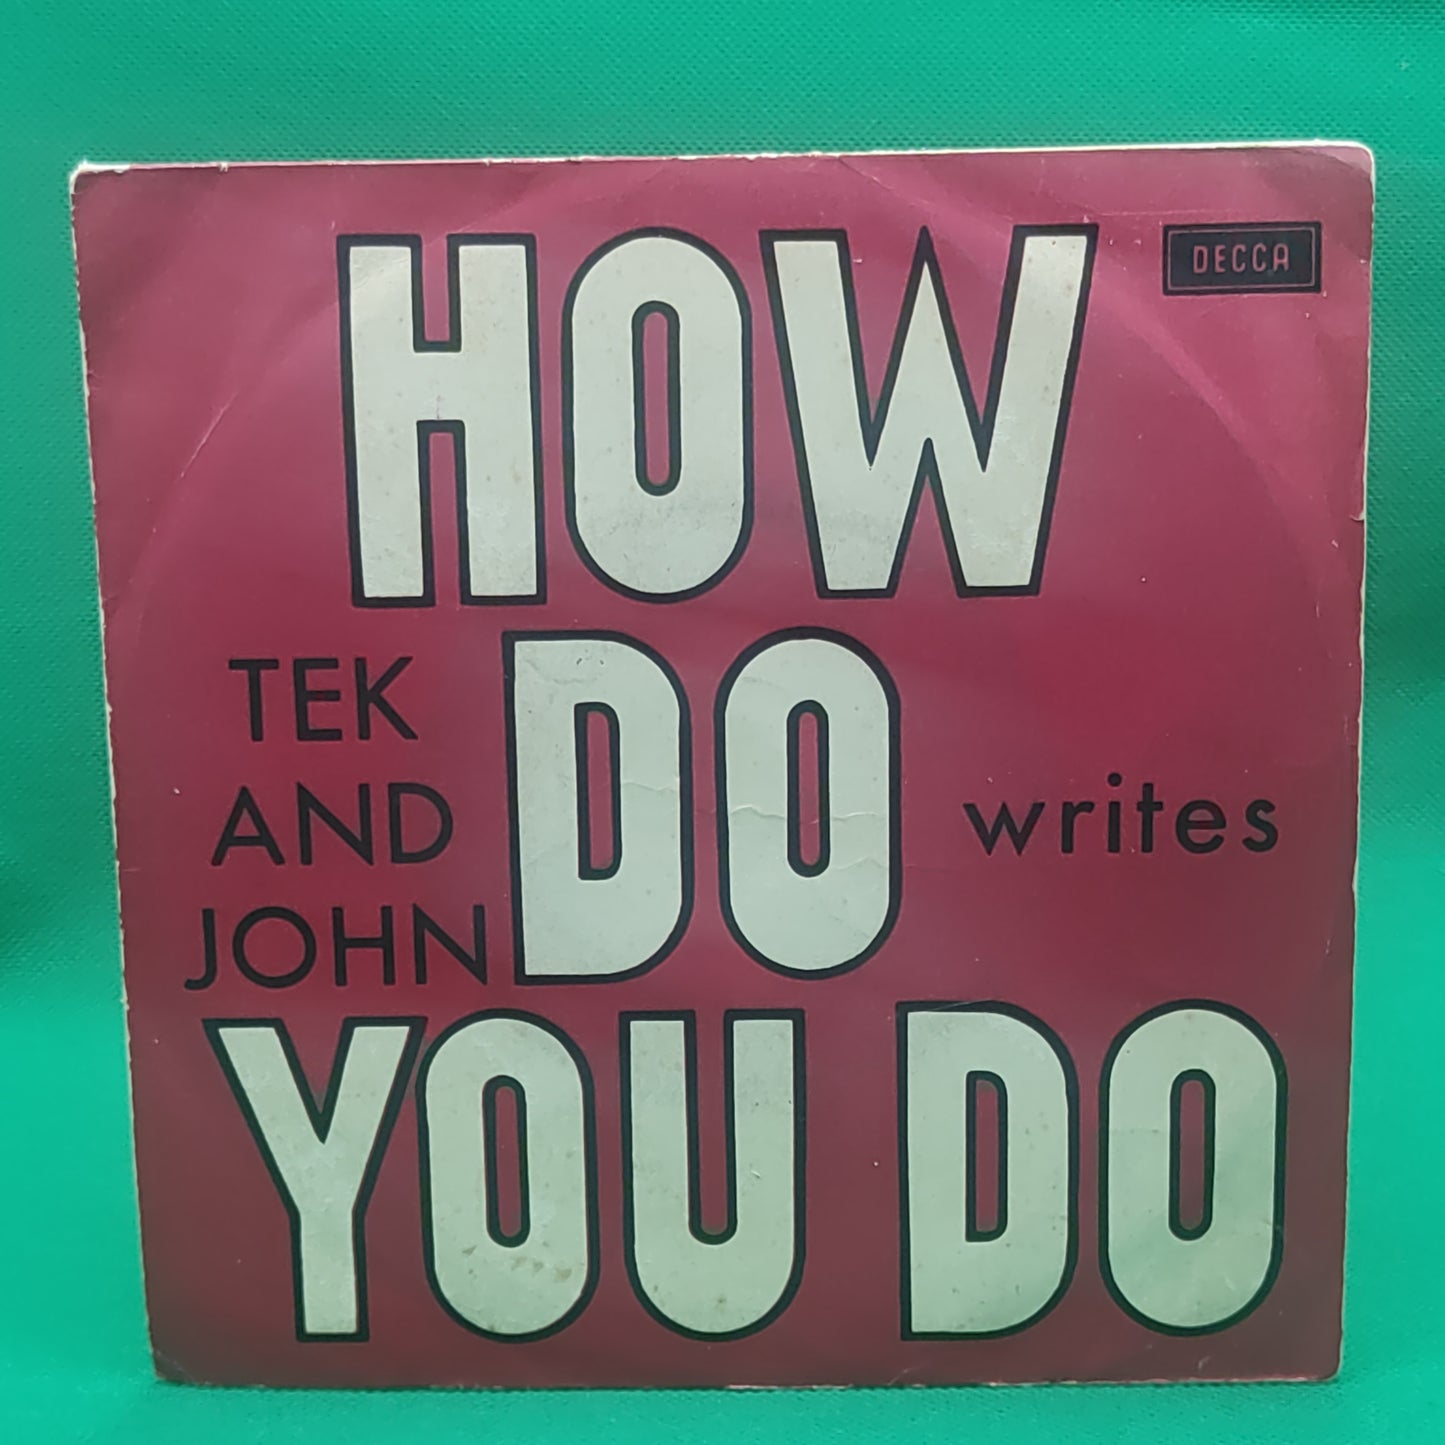 Tek and John - How do you do